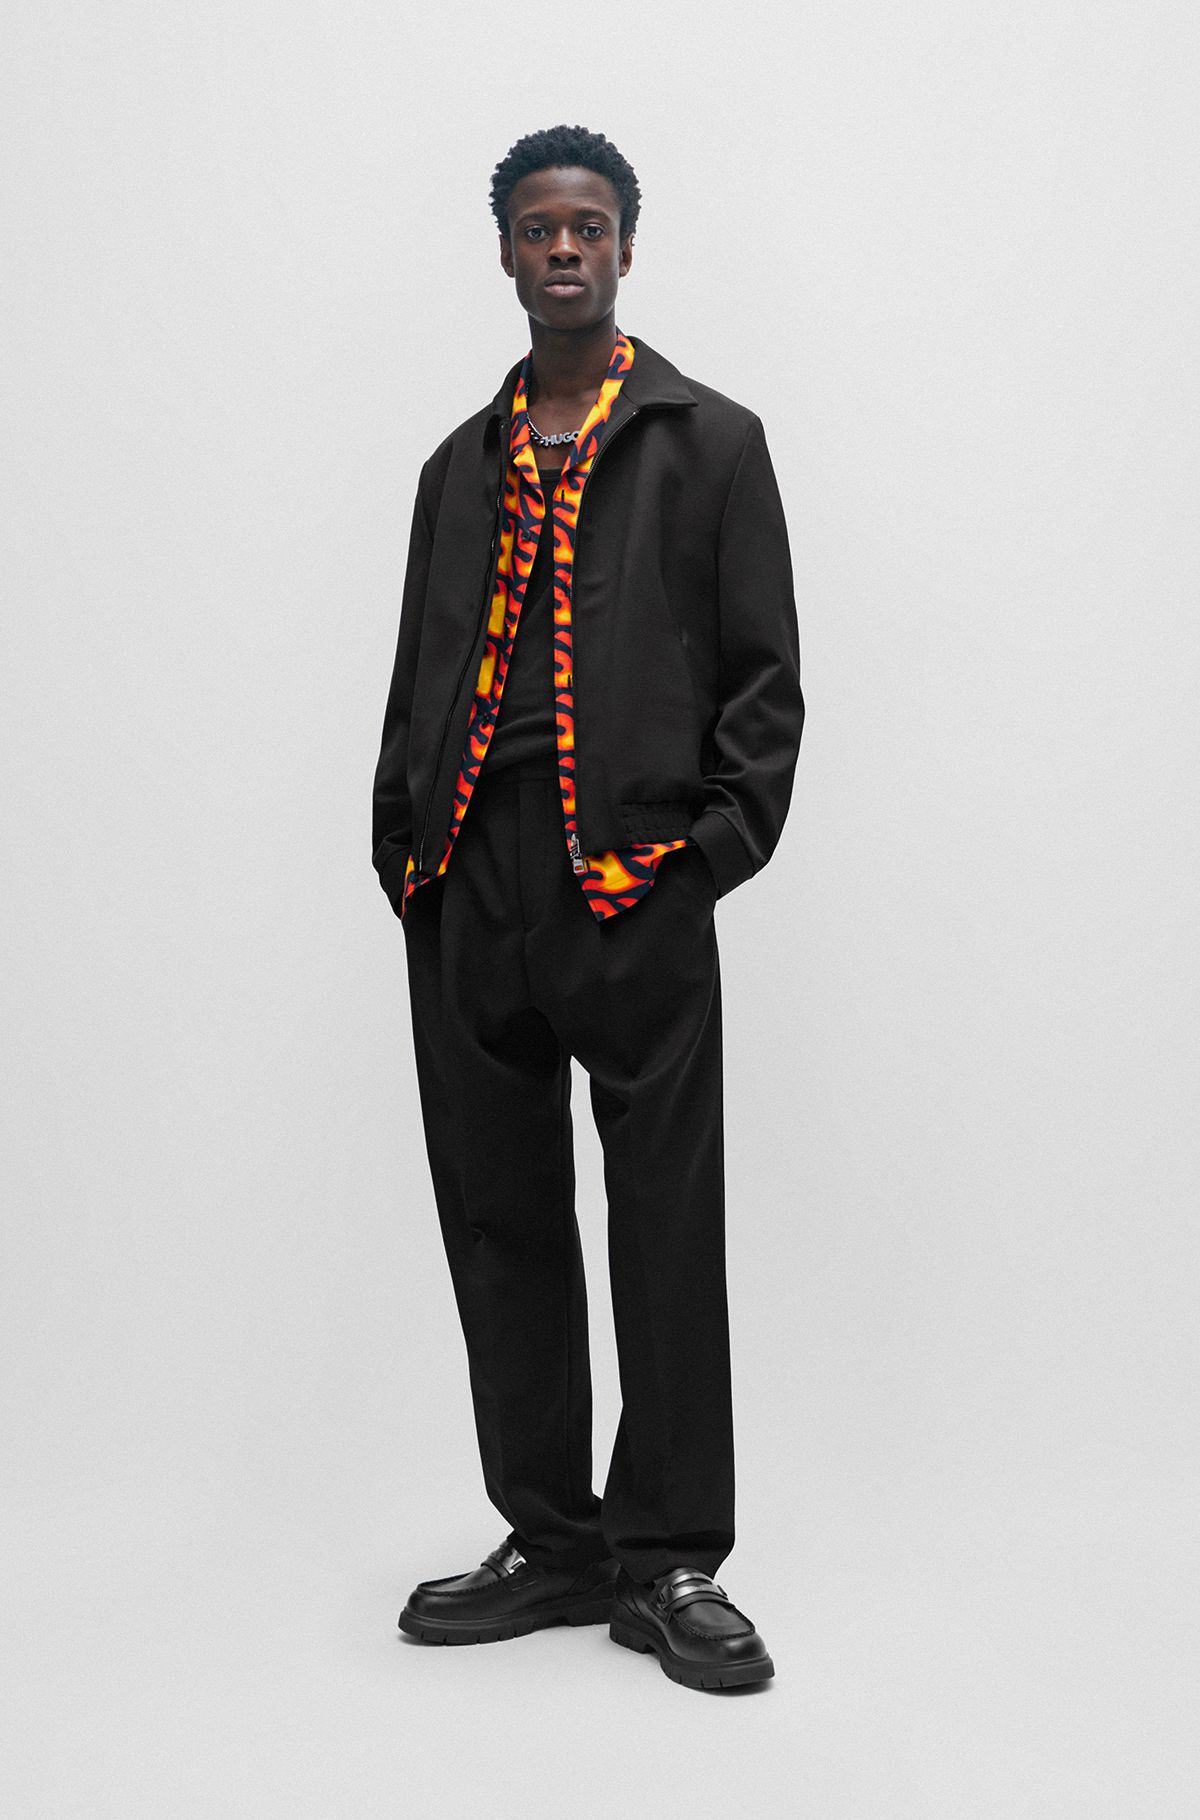 黒 スーツ for Men by HUGO BOSS | Slim, Tailored & Regular Fit